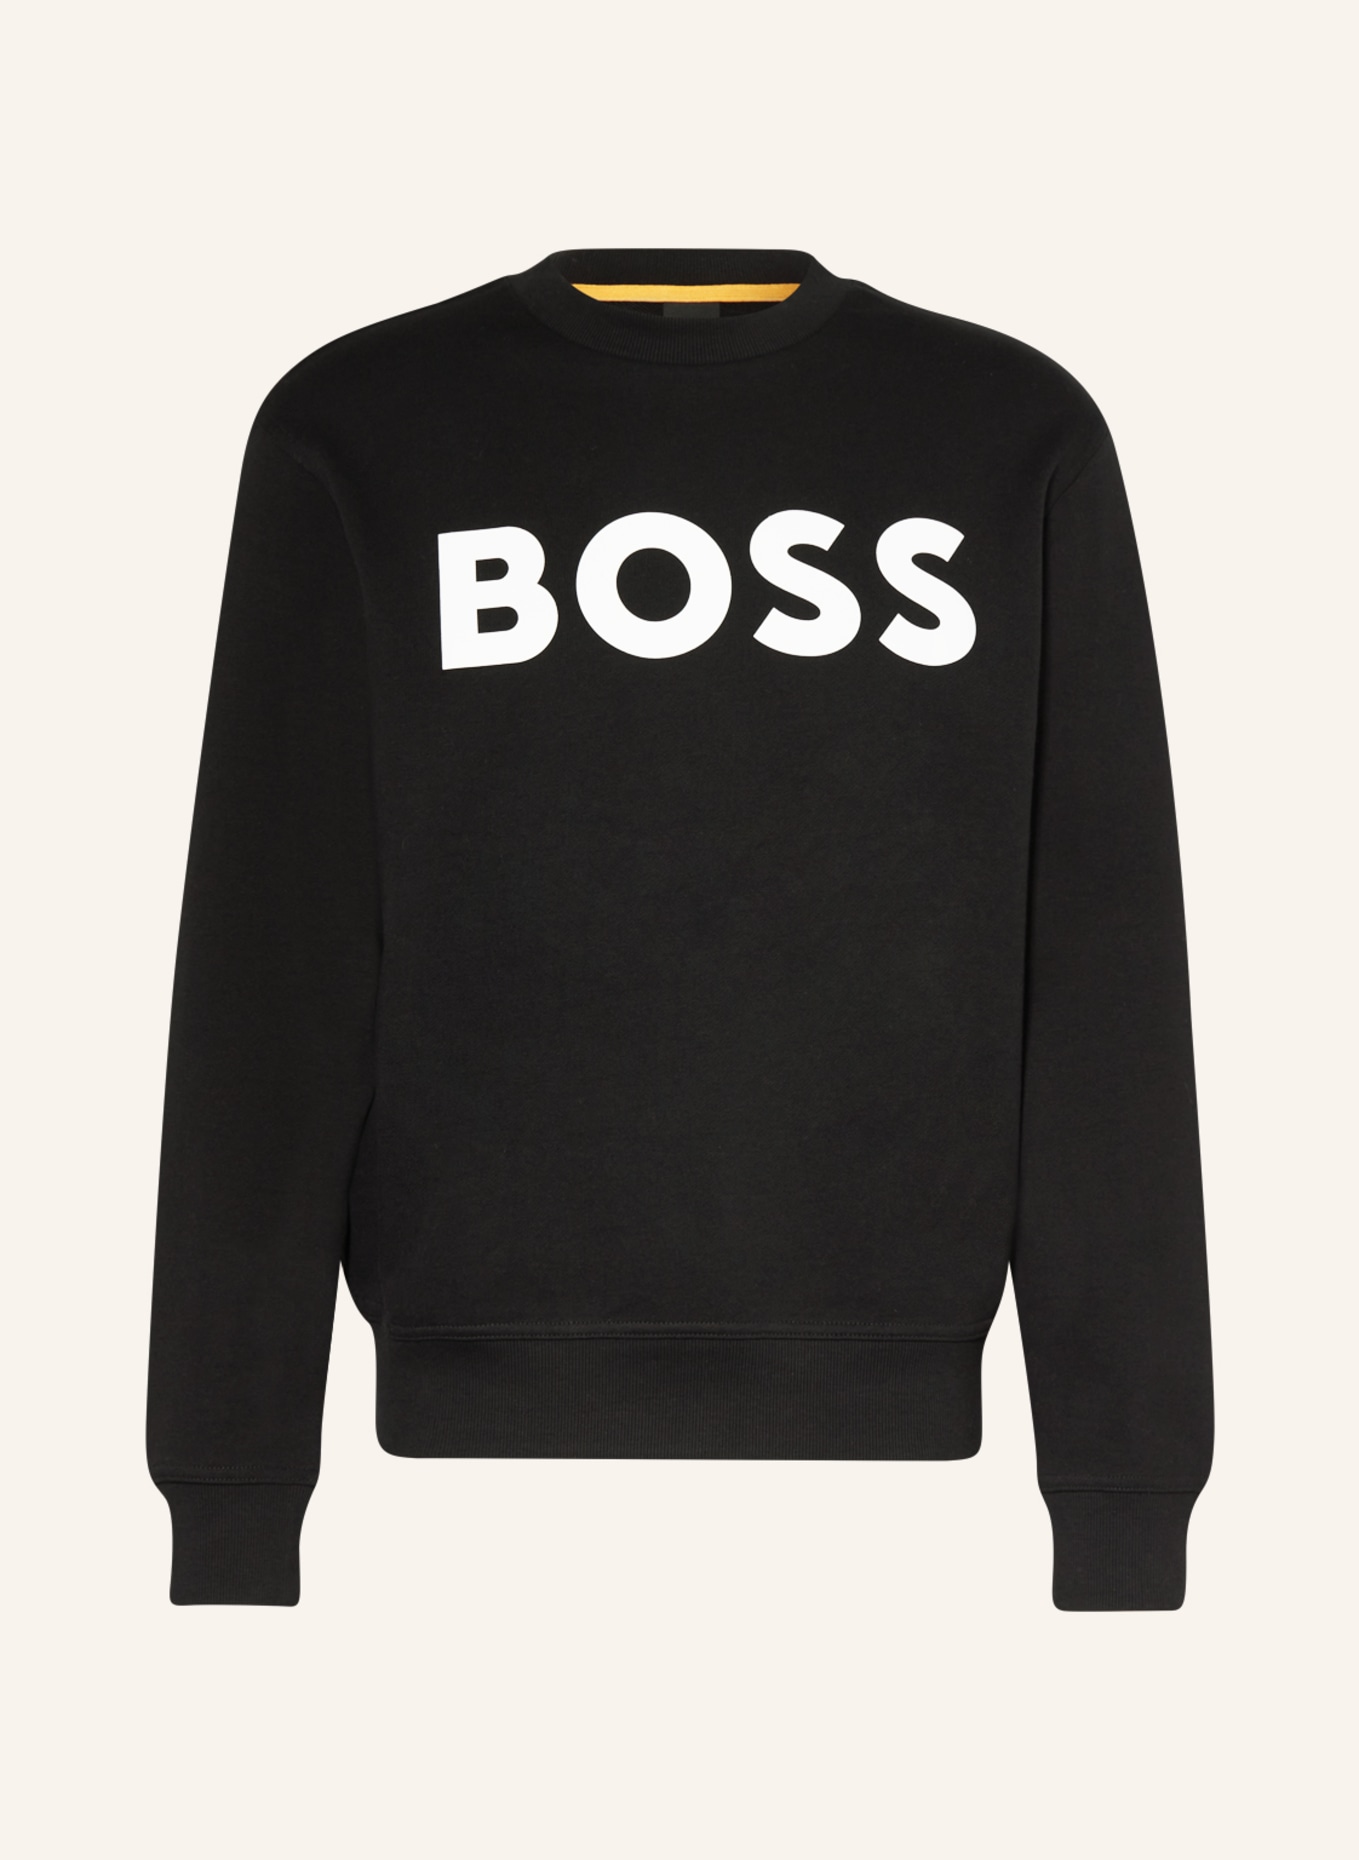 BOSS Sweatshirt WEBASICCREW, Farbe: SCHWARZ/ WEISS (Bild 1)